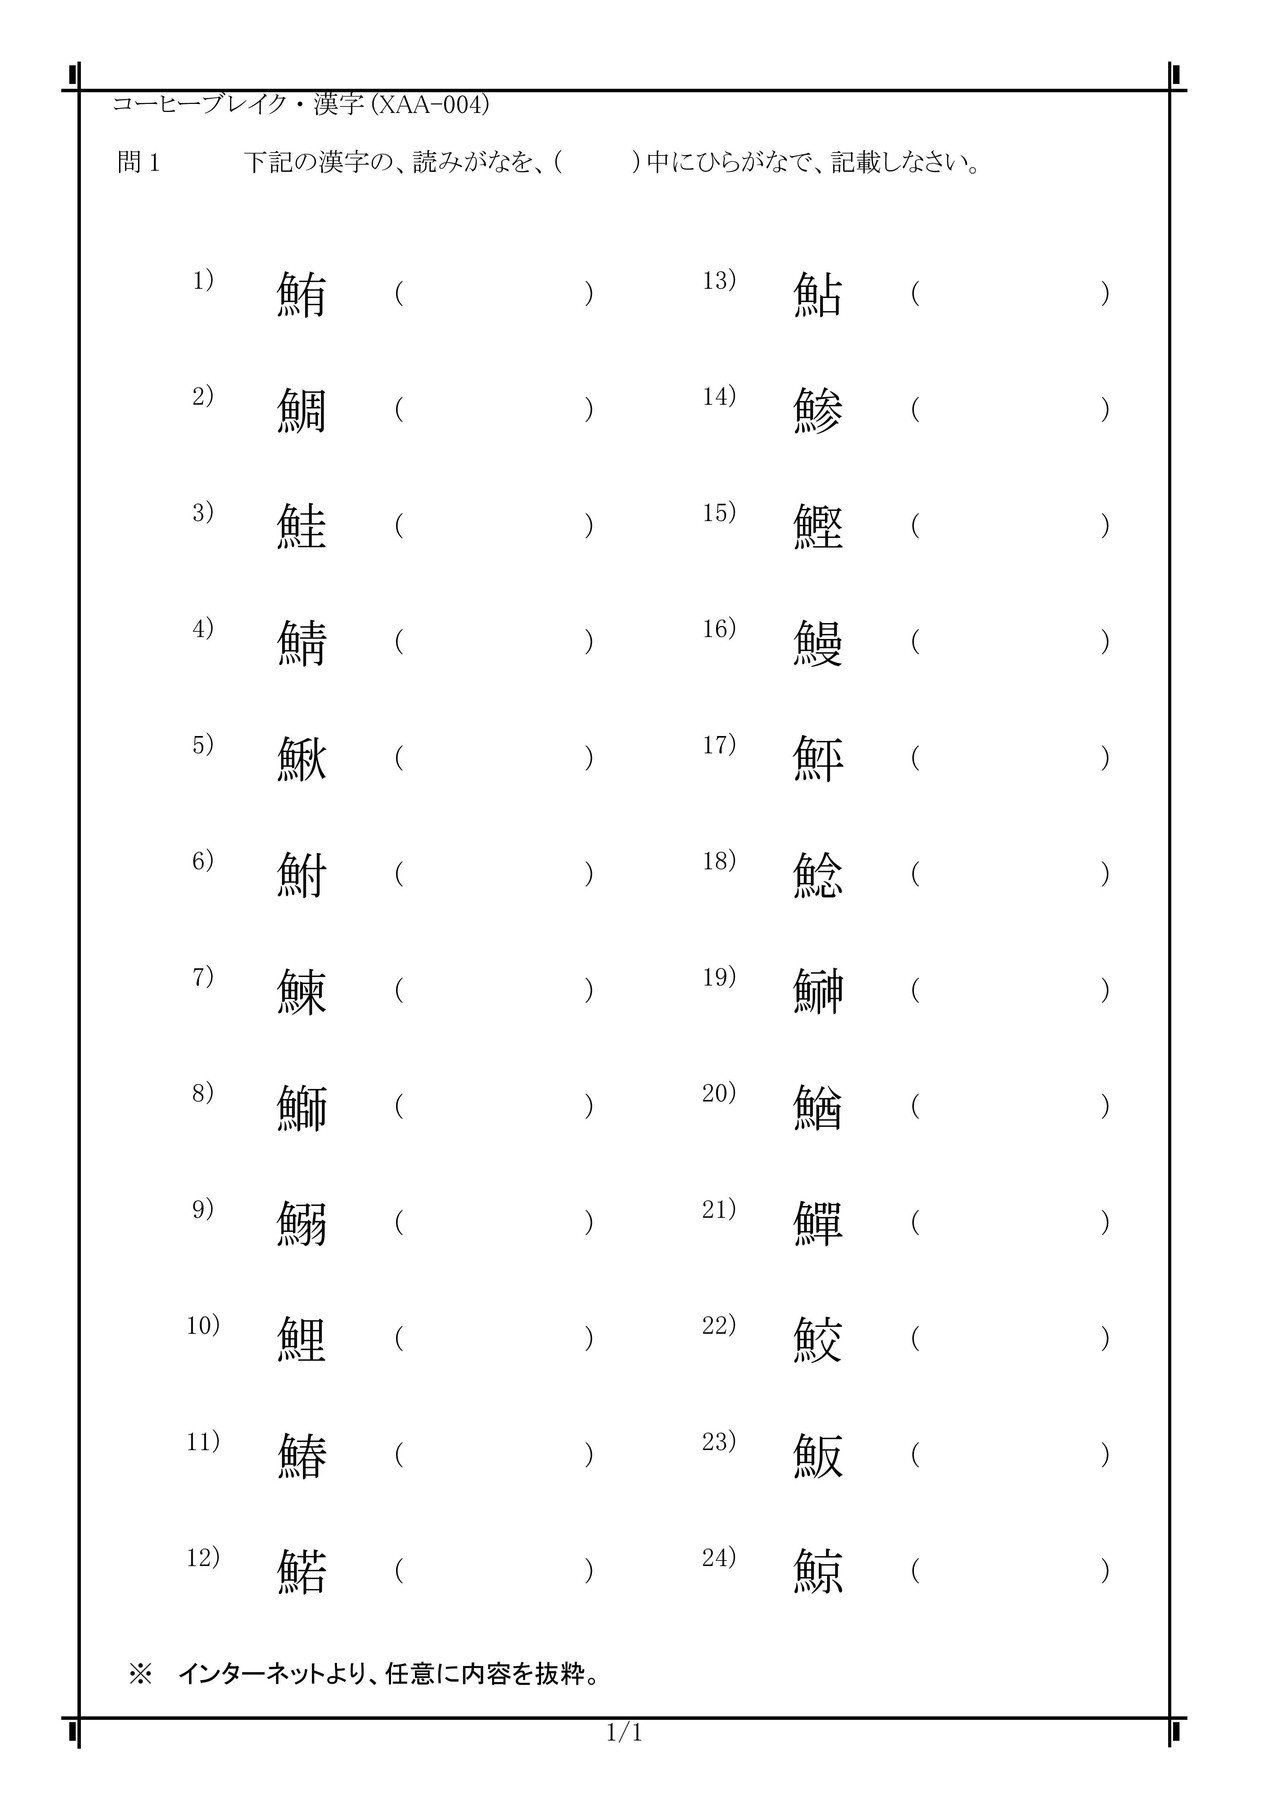 コーヒーブレイク 魚へんの漢字に関する 問題と解答です Xaa 004 電気の問題集研究所 Dmk Note